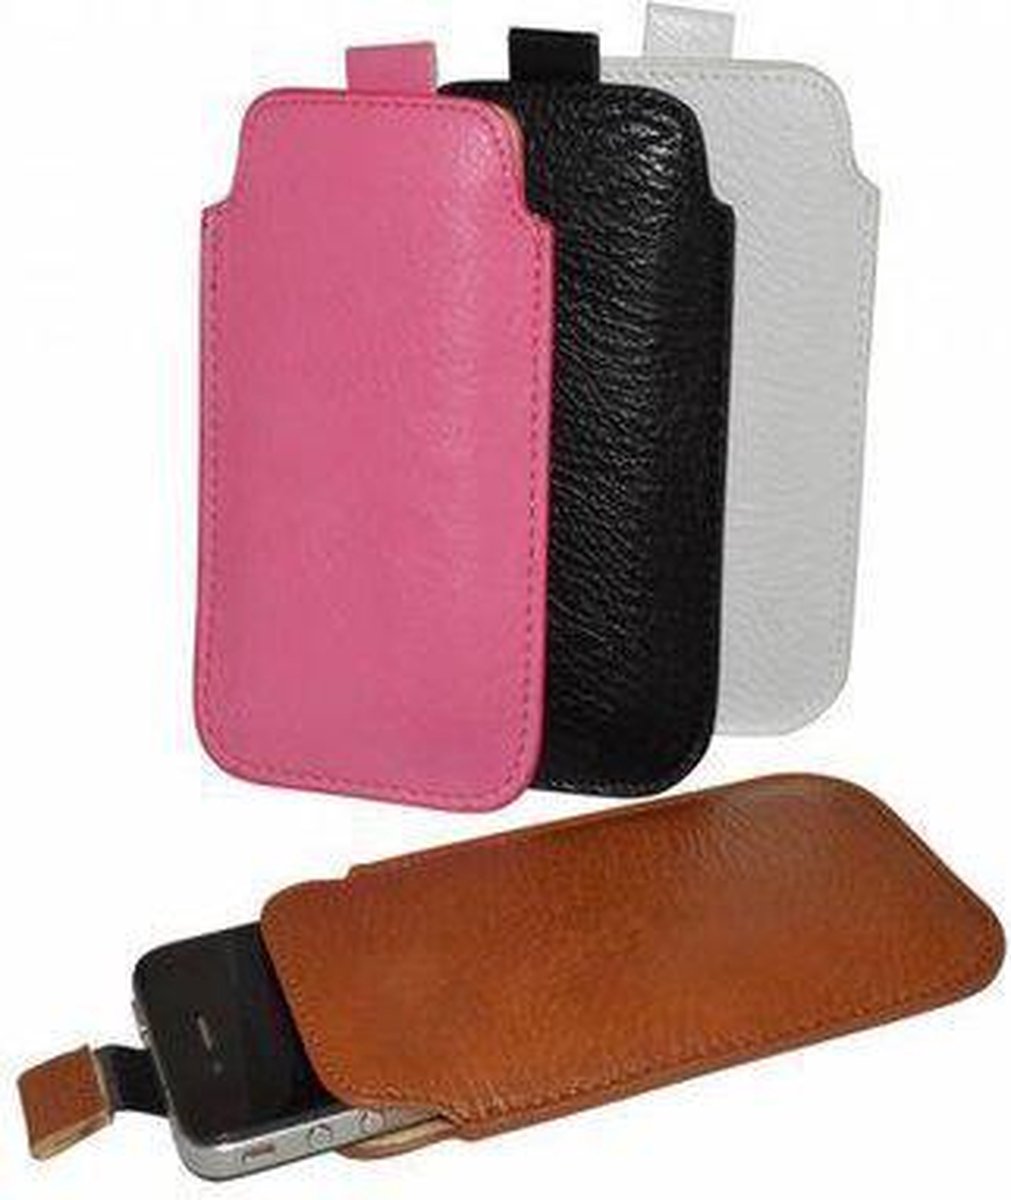 Blackphone Smartphone hoesje, Luxe PU Leren Sleeve, roze , merk i12Cover